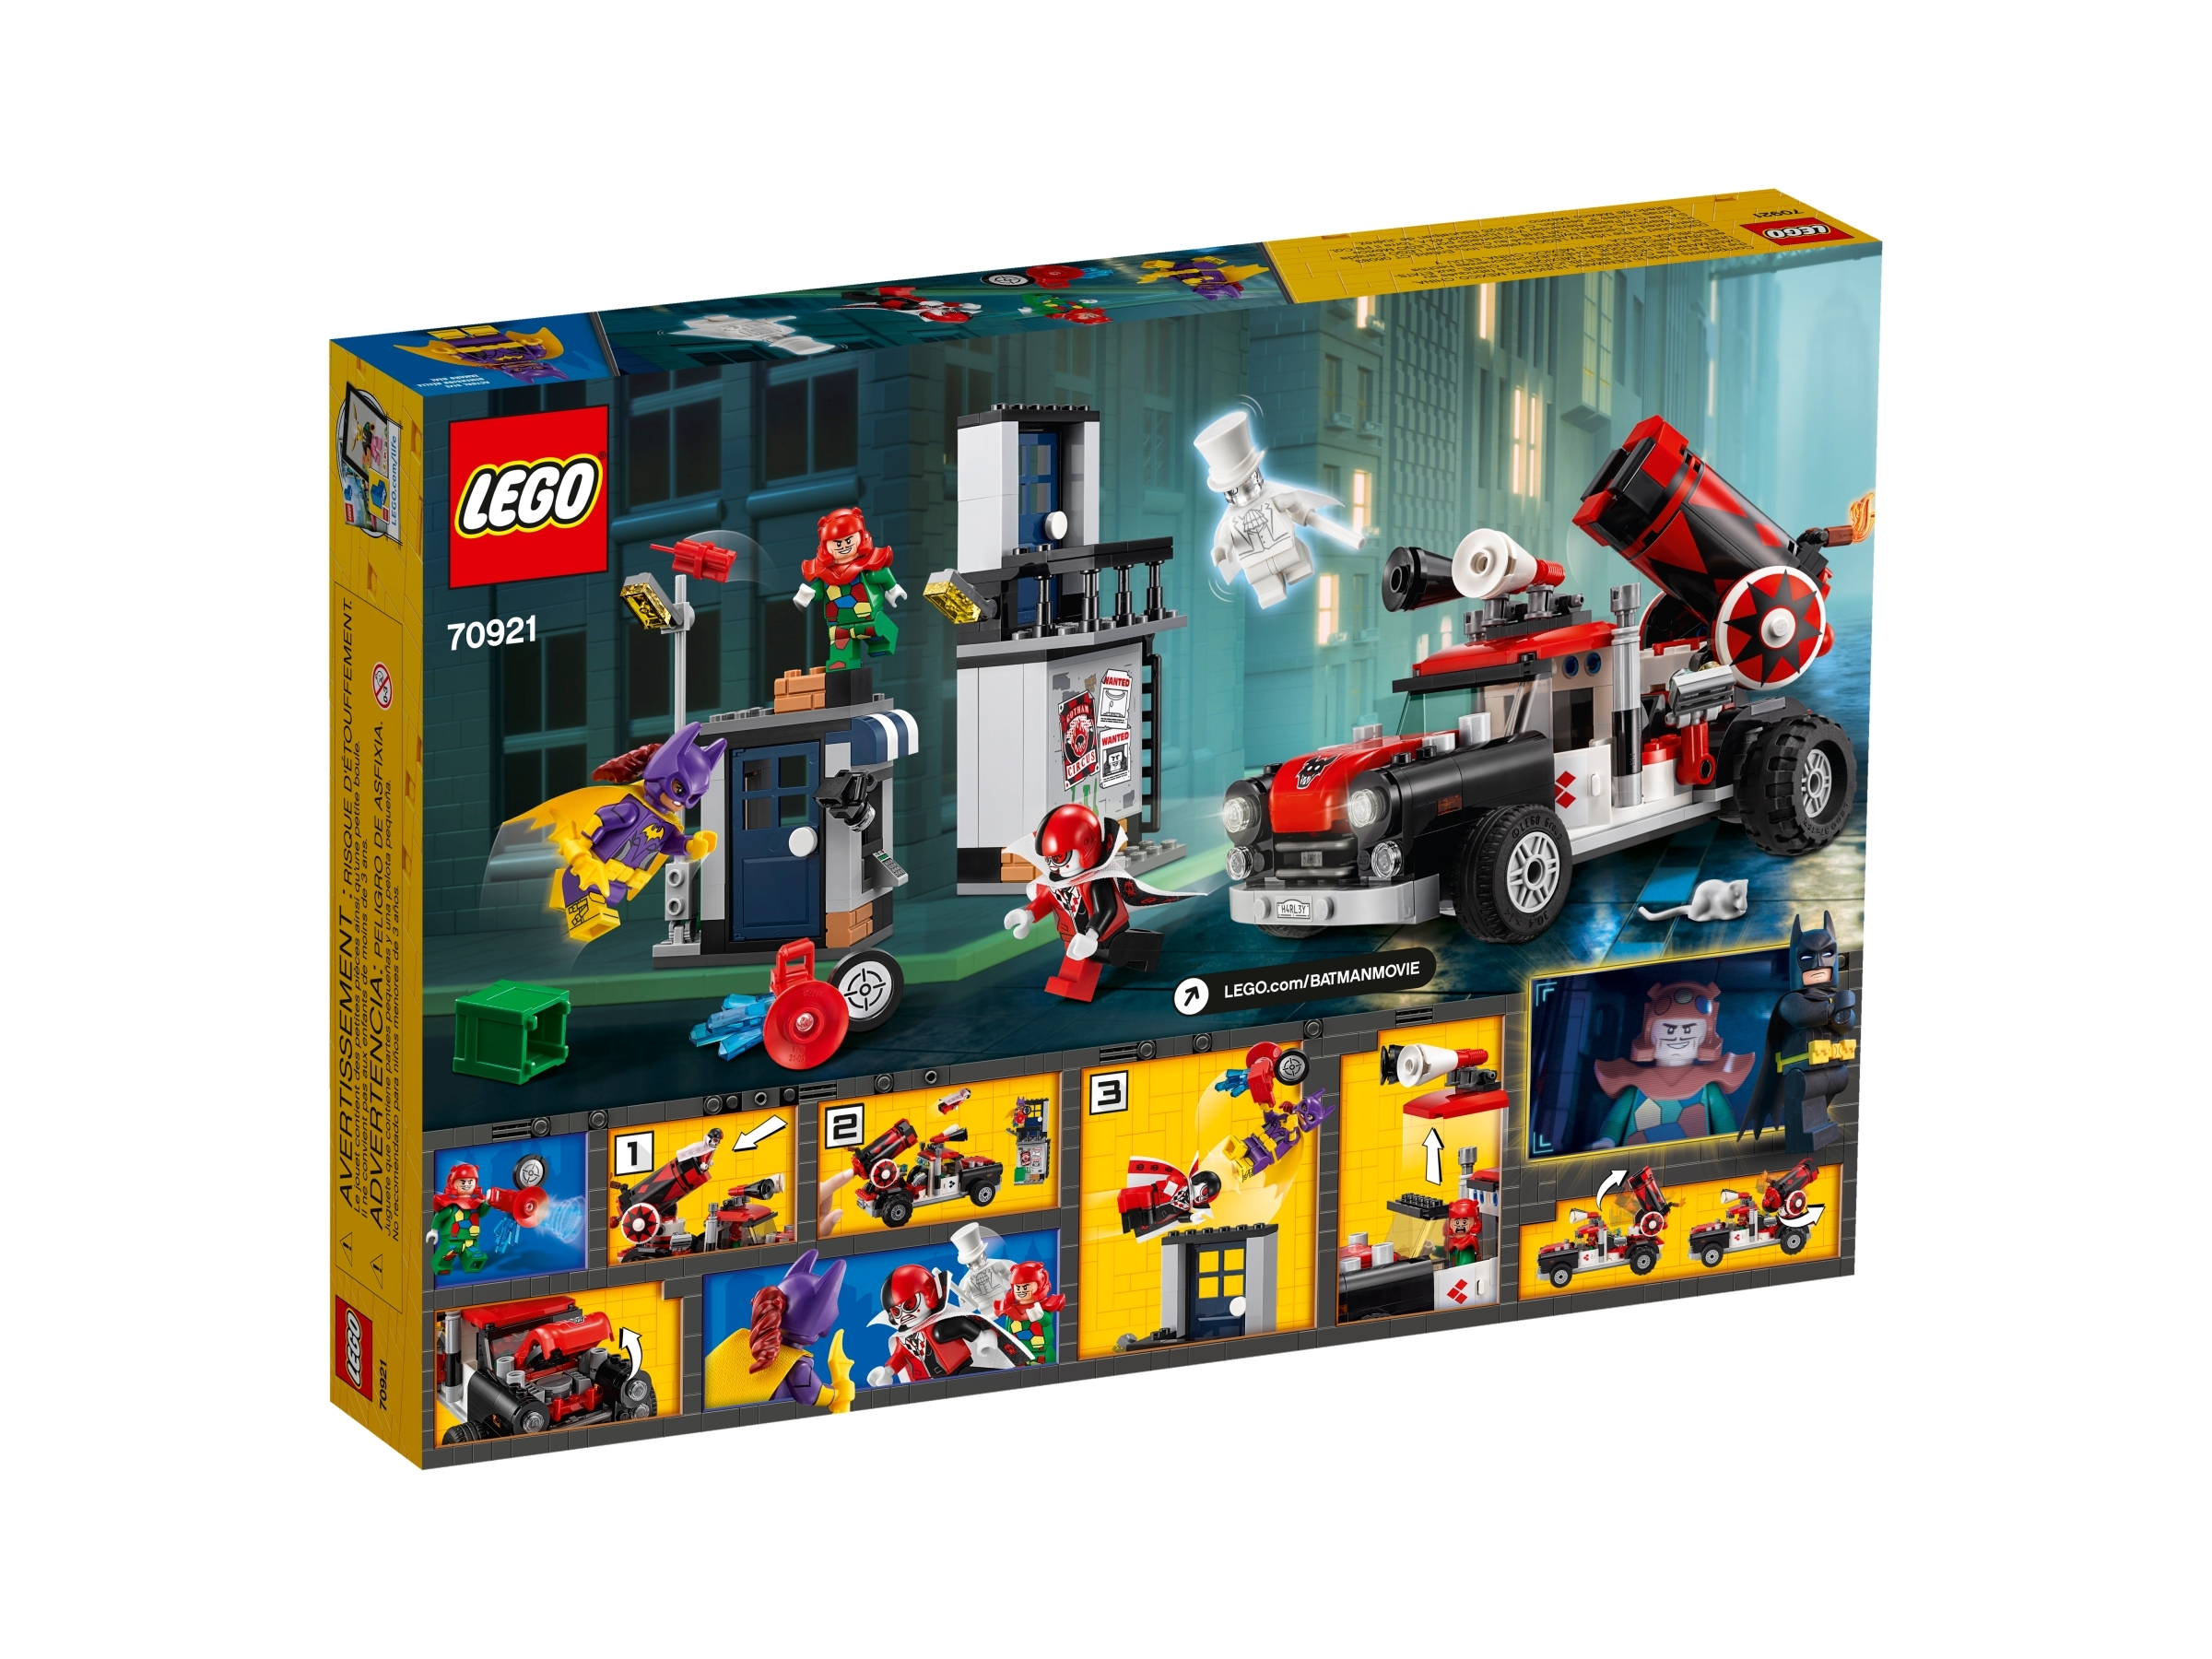 Lego The Batman Movie 70921 Harley Quinn Attack Minifig Minifigure Batgirl w Gun 